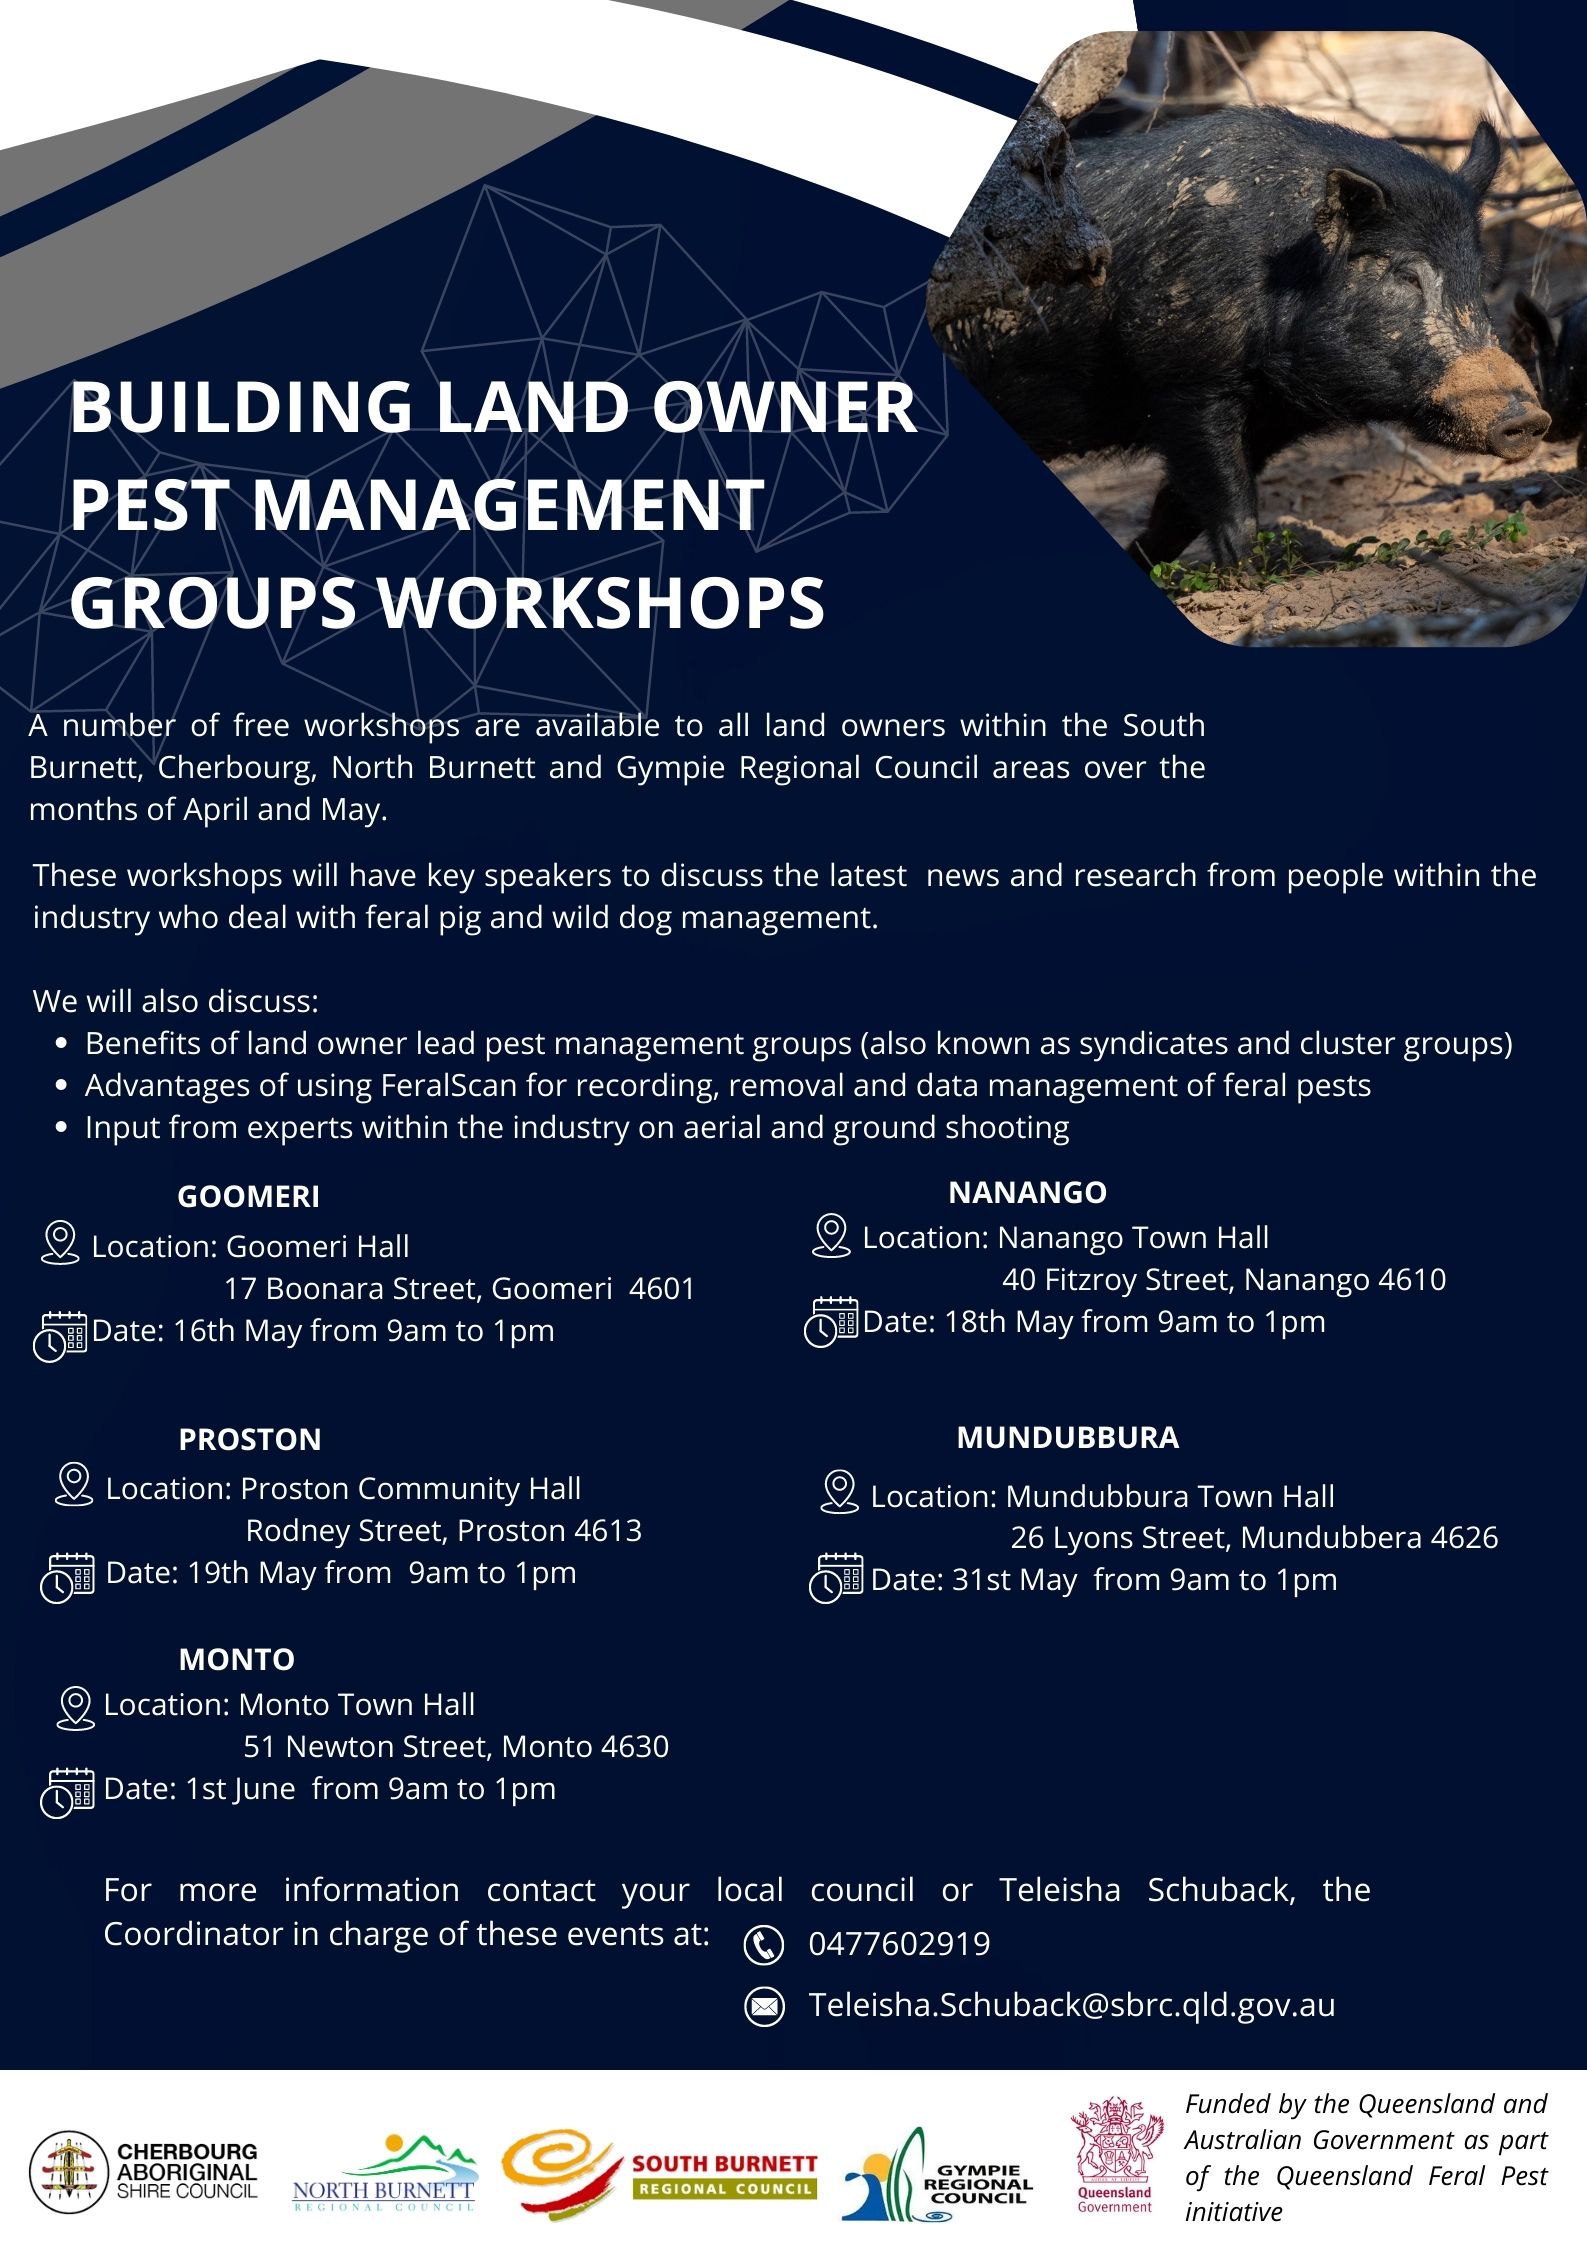 Updated building land owner pest management groups workshops poster